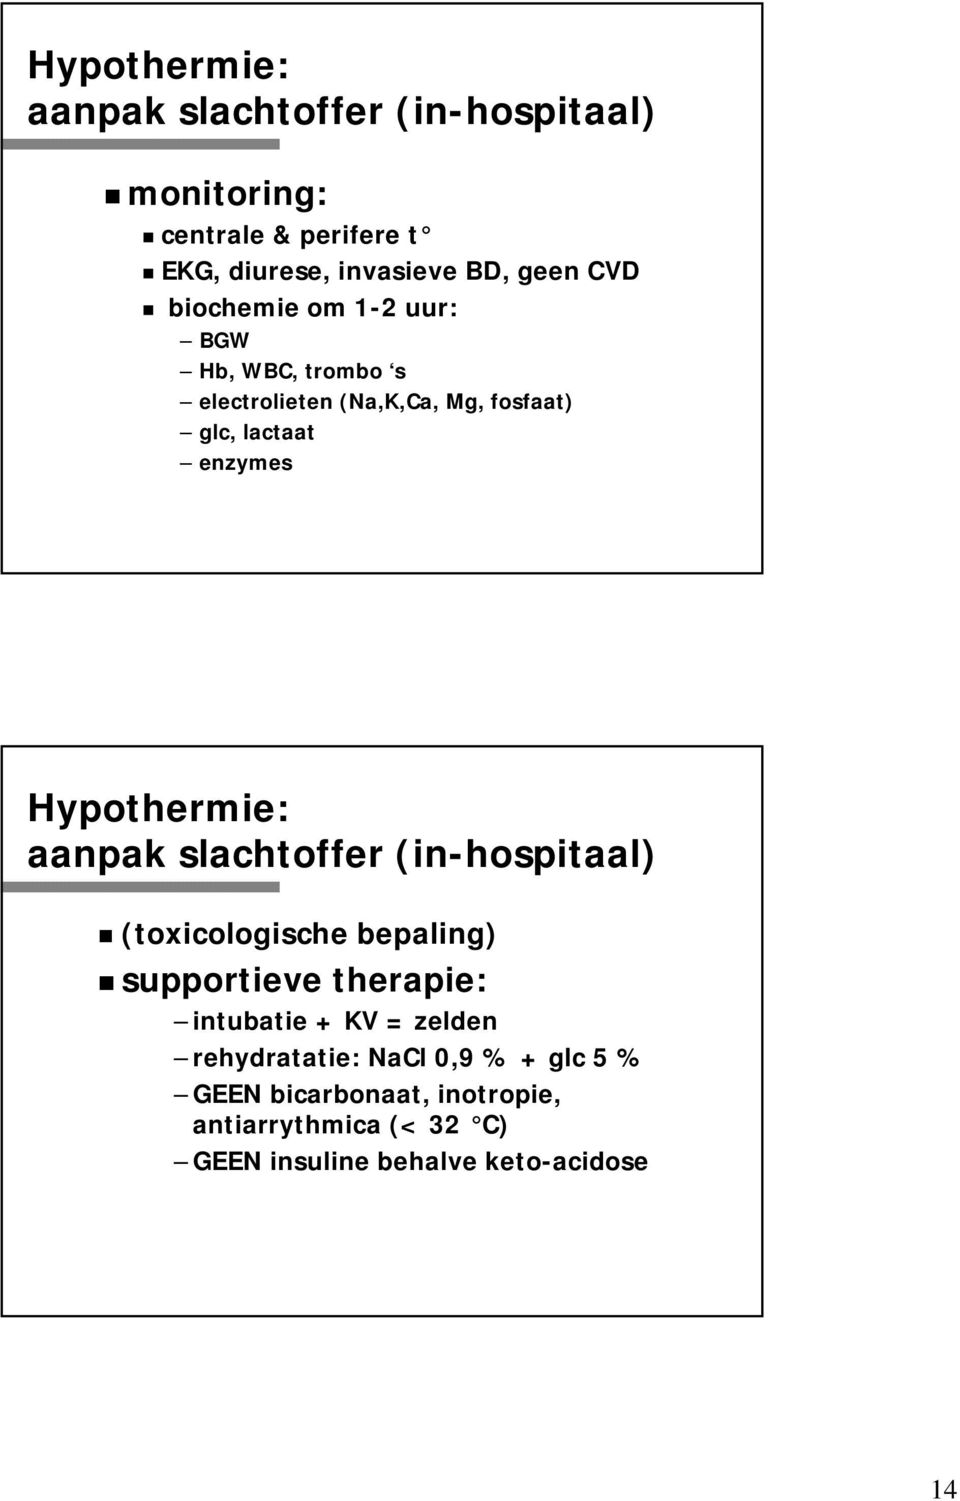 Hypothermie: aanpak slachtoffer (in-hospitaal) (toxicologische bepaling) supportieve therapie: intubatie + KV =